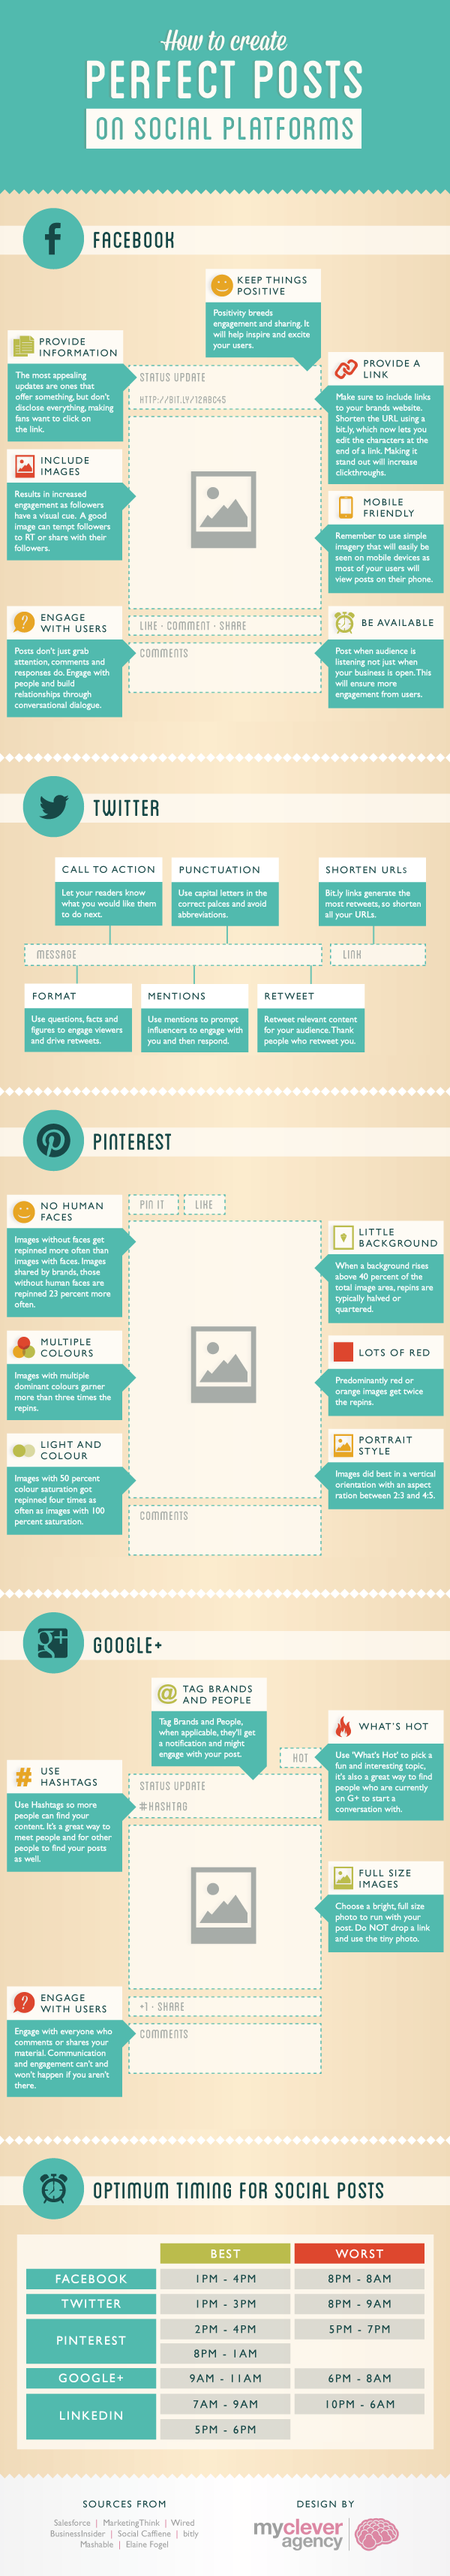 Cómo crear el post perfecto en Google+, Facebook, Twitter y Pinterest.